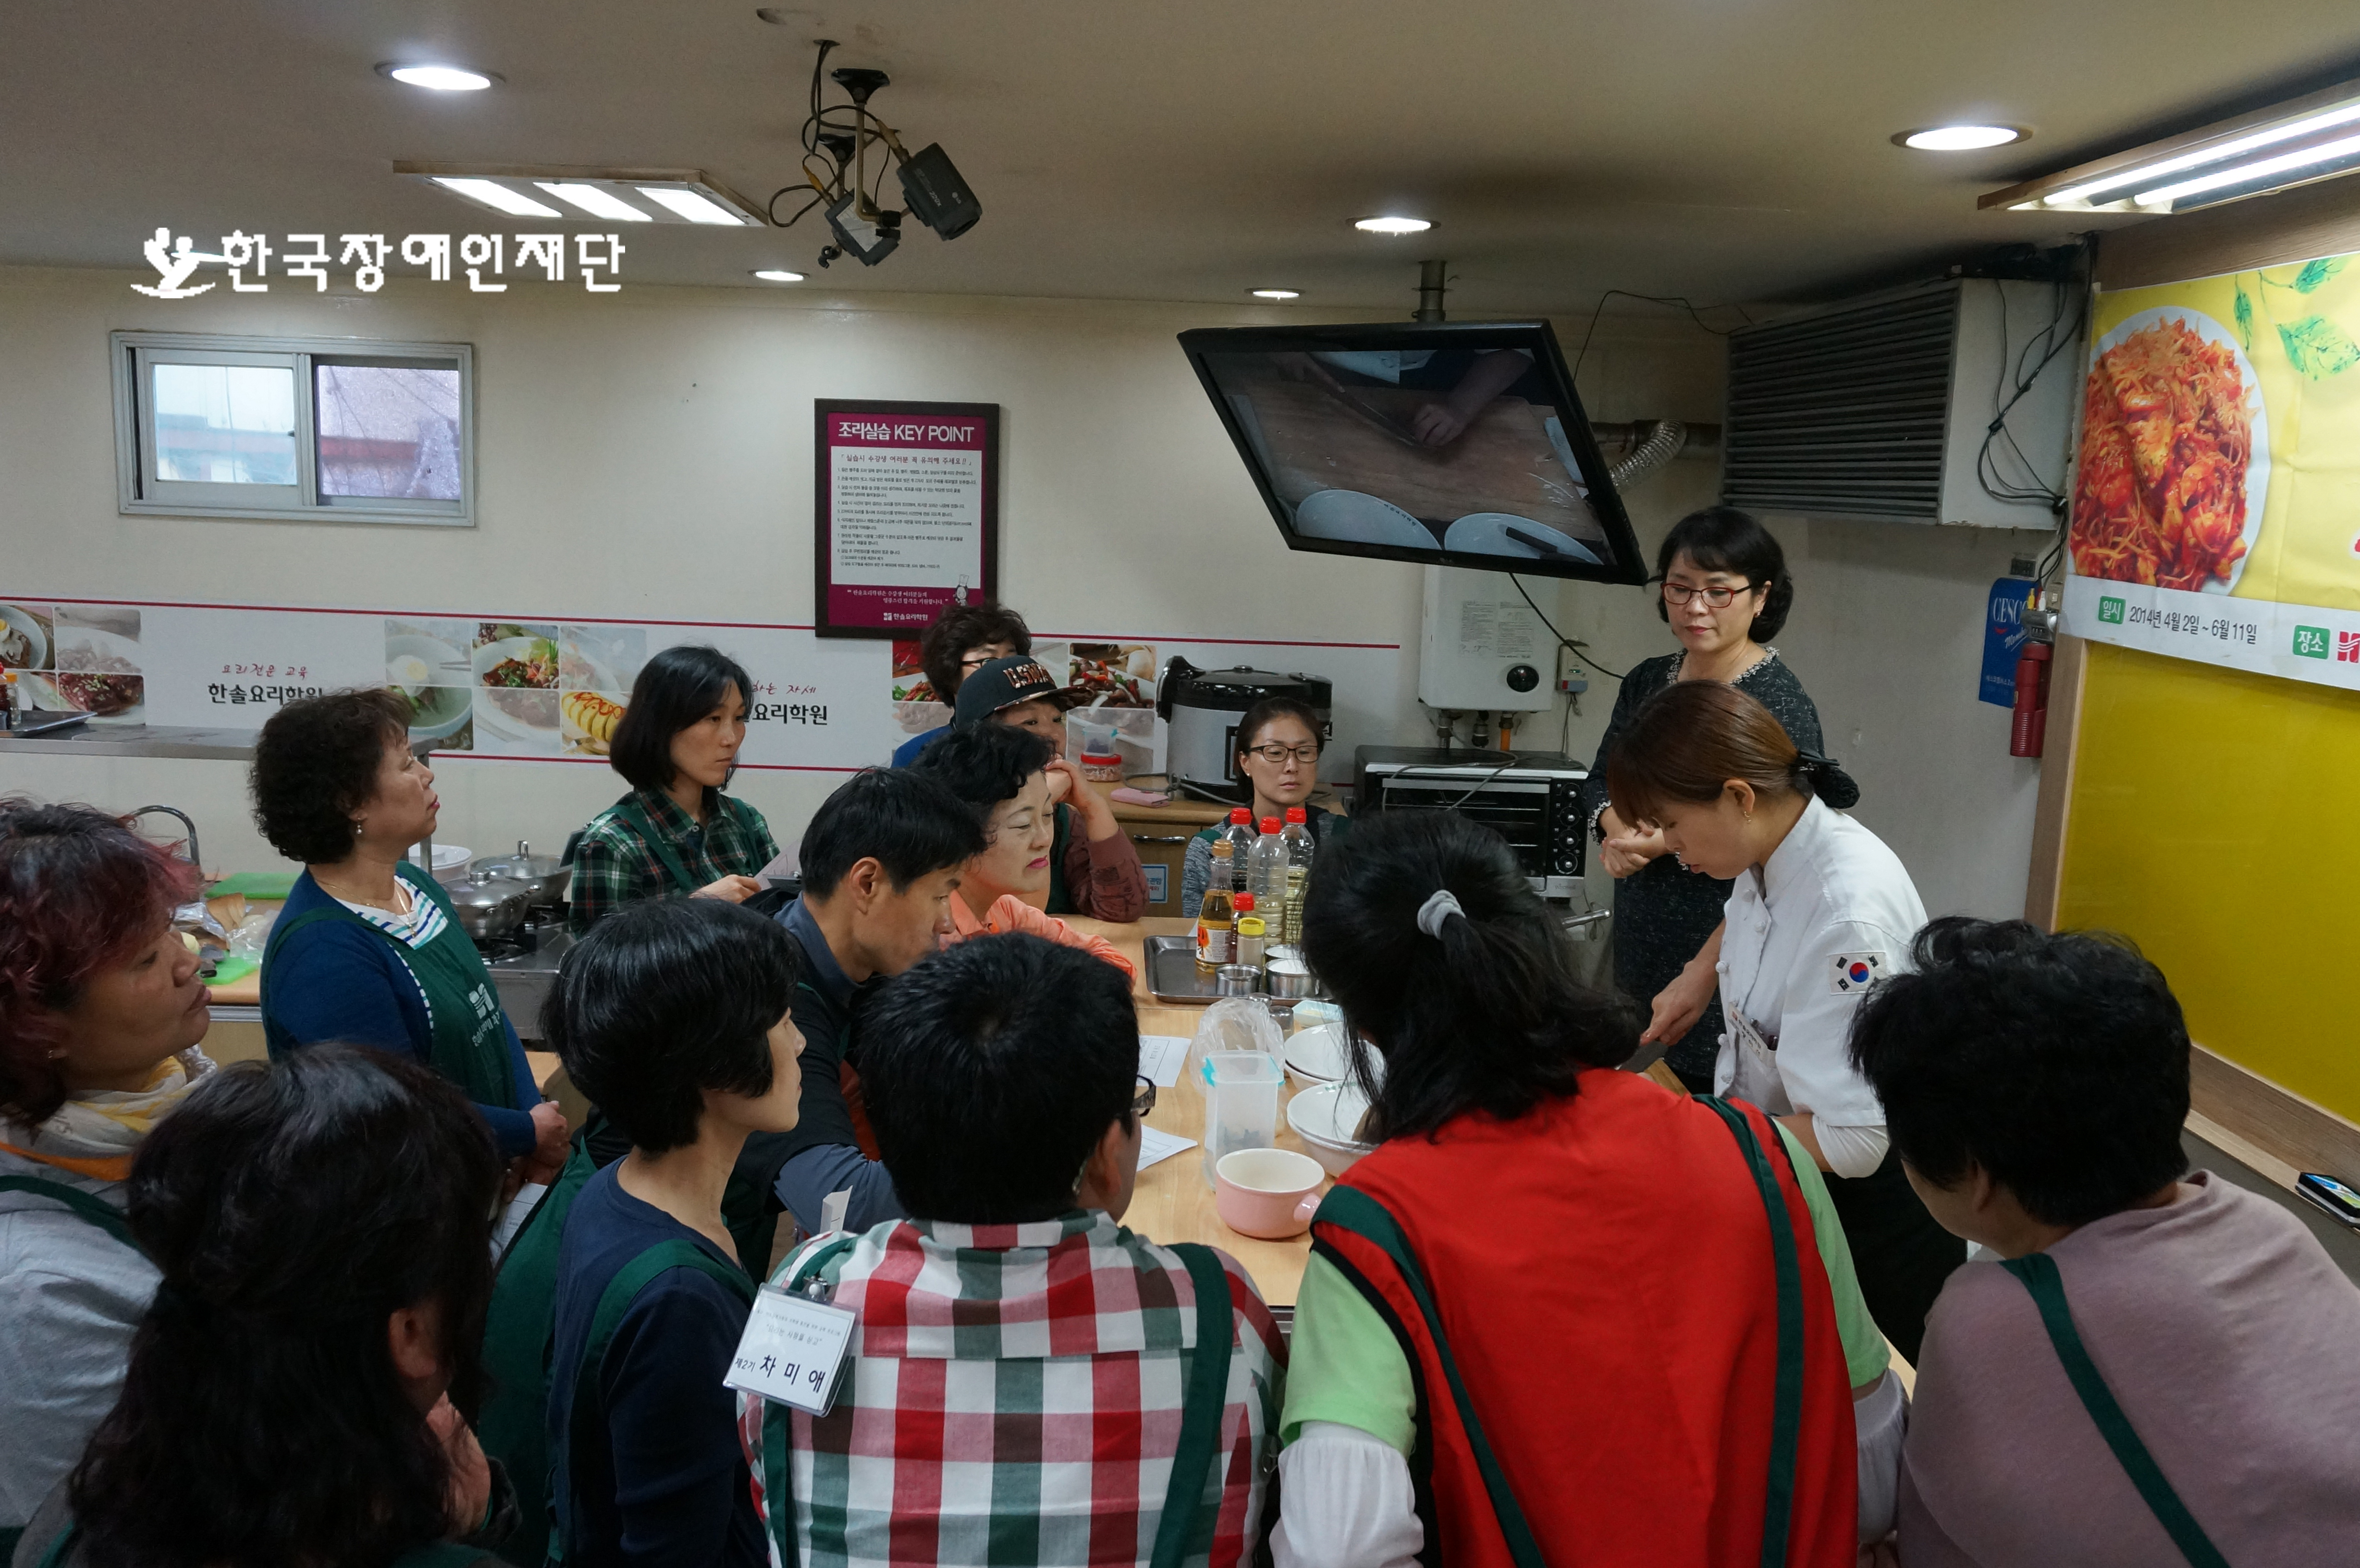 요리수업 참가자들이 열심히 강의를 듣고 있다